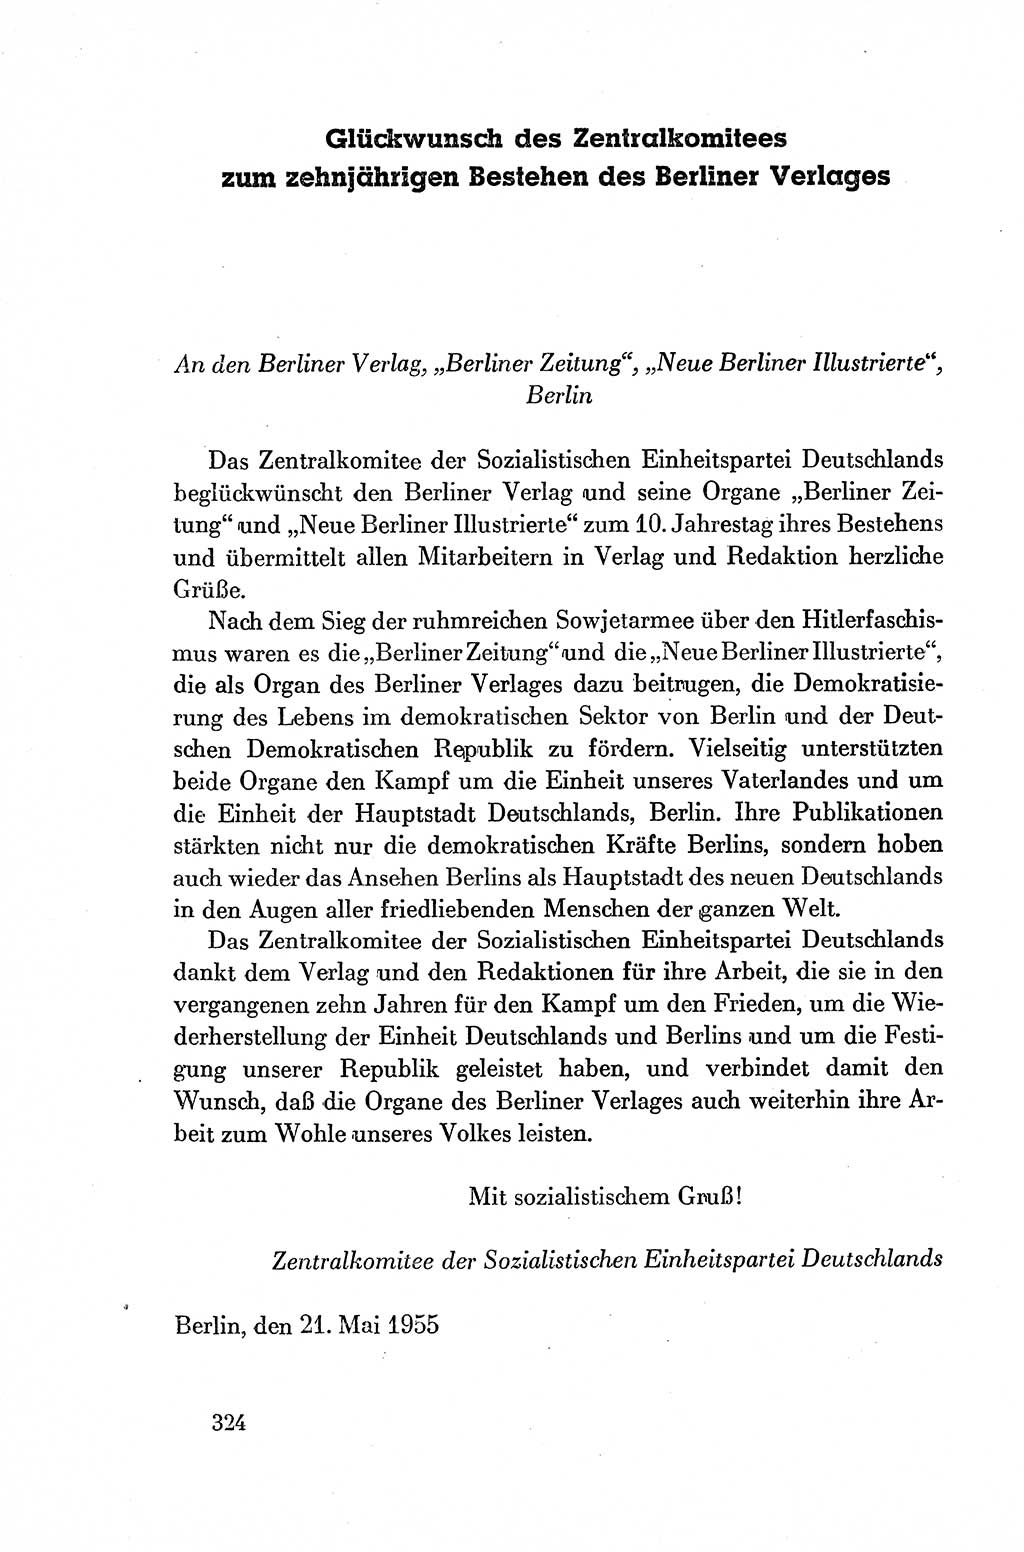 Dokumente der Sozialistischen Einheitspartei Deutschlands (SED) [Deutsche Demokratische Republik (DDR)] 1954-1955, Seite 324 (Dok. SED DDR 1954-1955, S. 324)